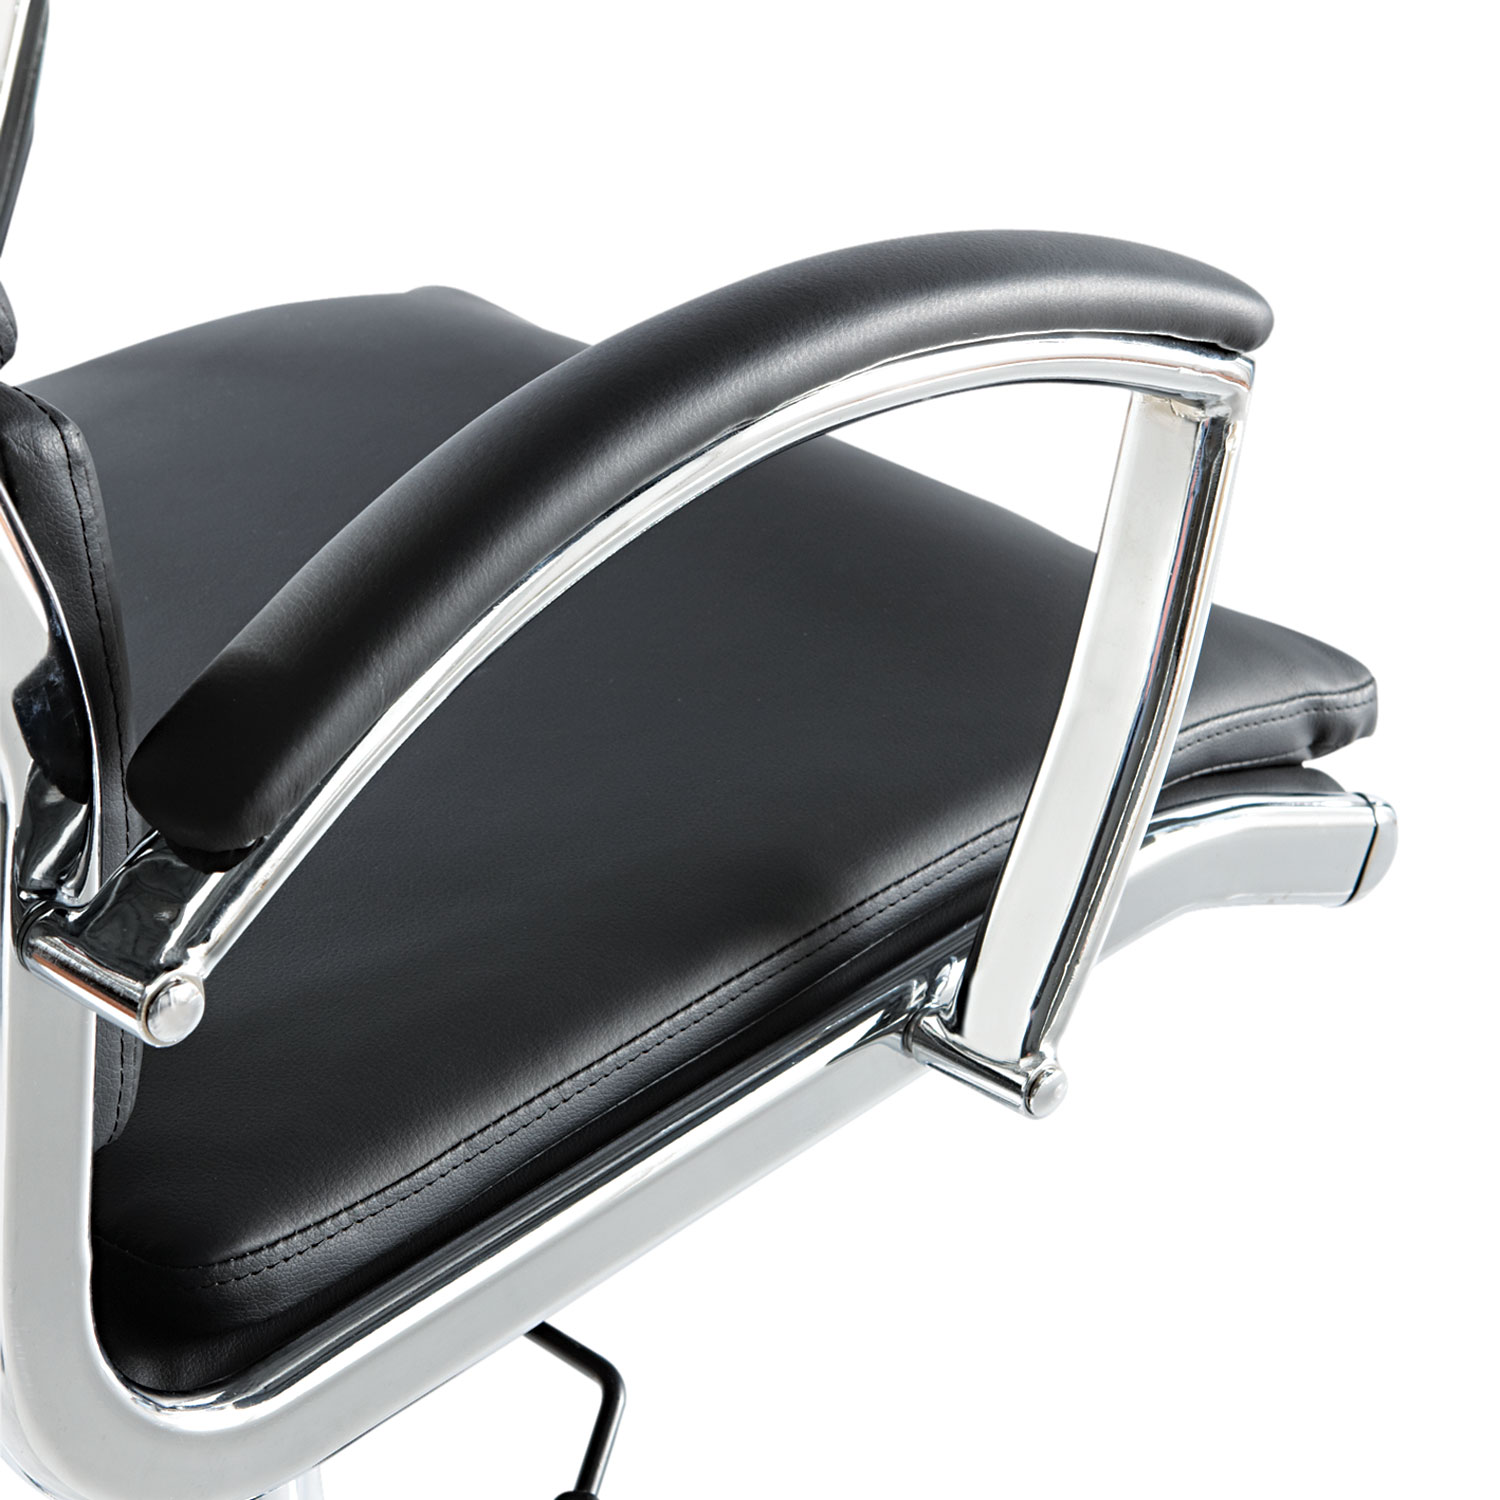 Alera Neratoli Series High-Back Swivel/Tilt Chair, Black Leather, Chrome Frame